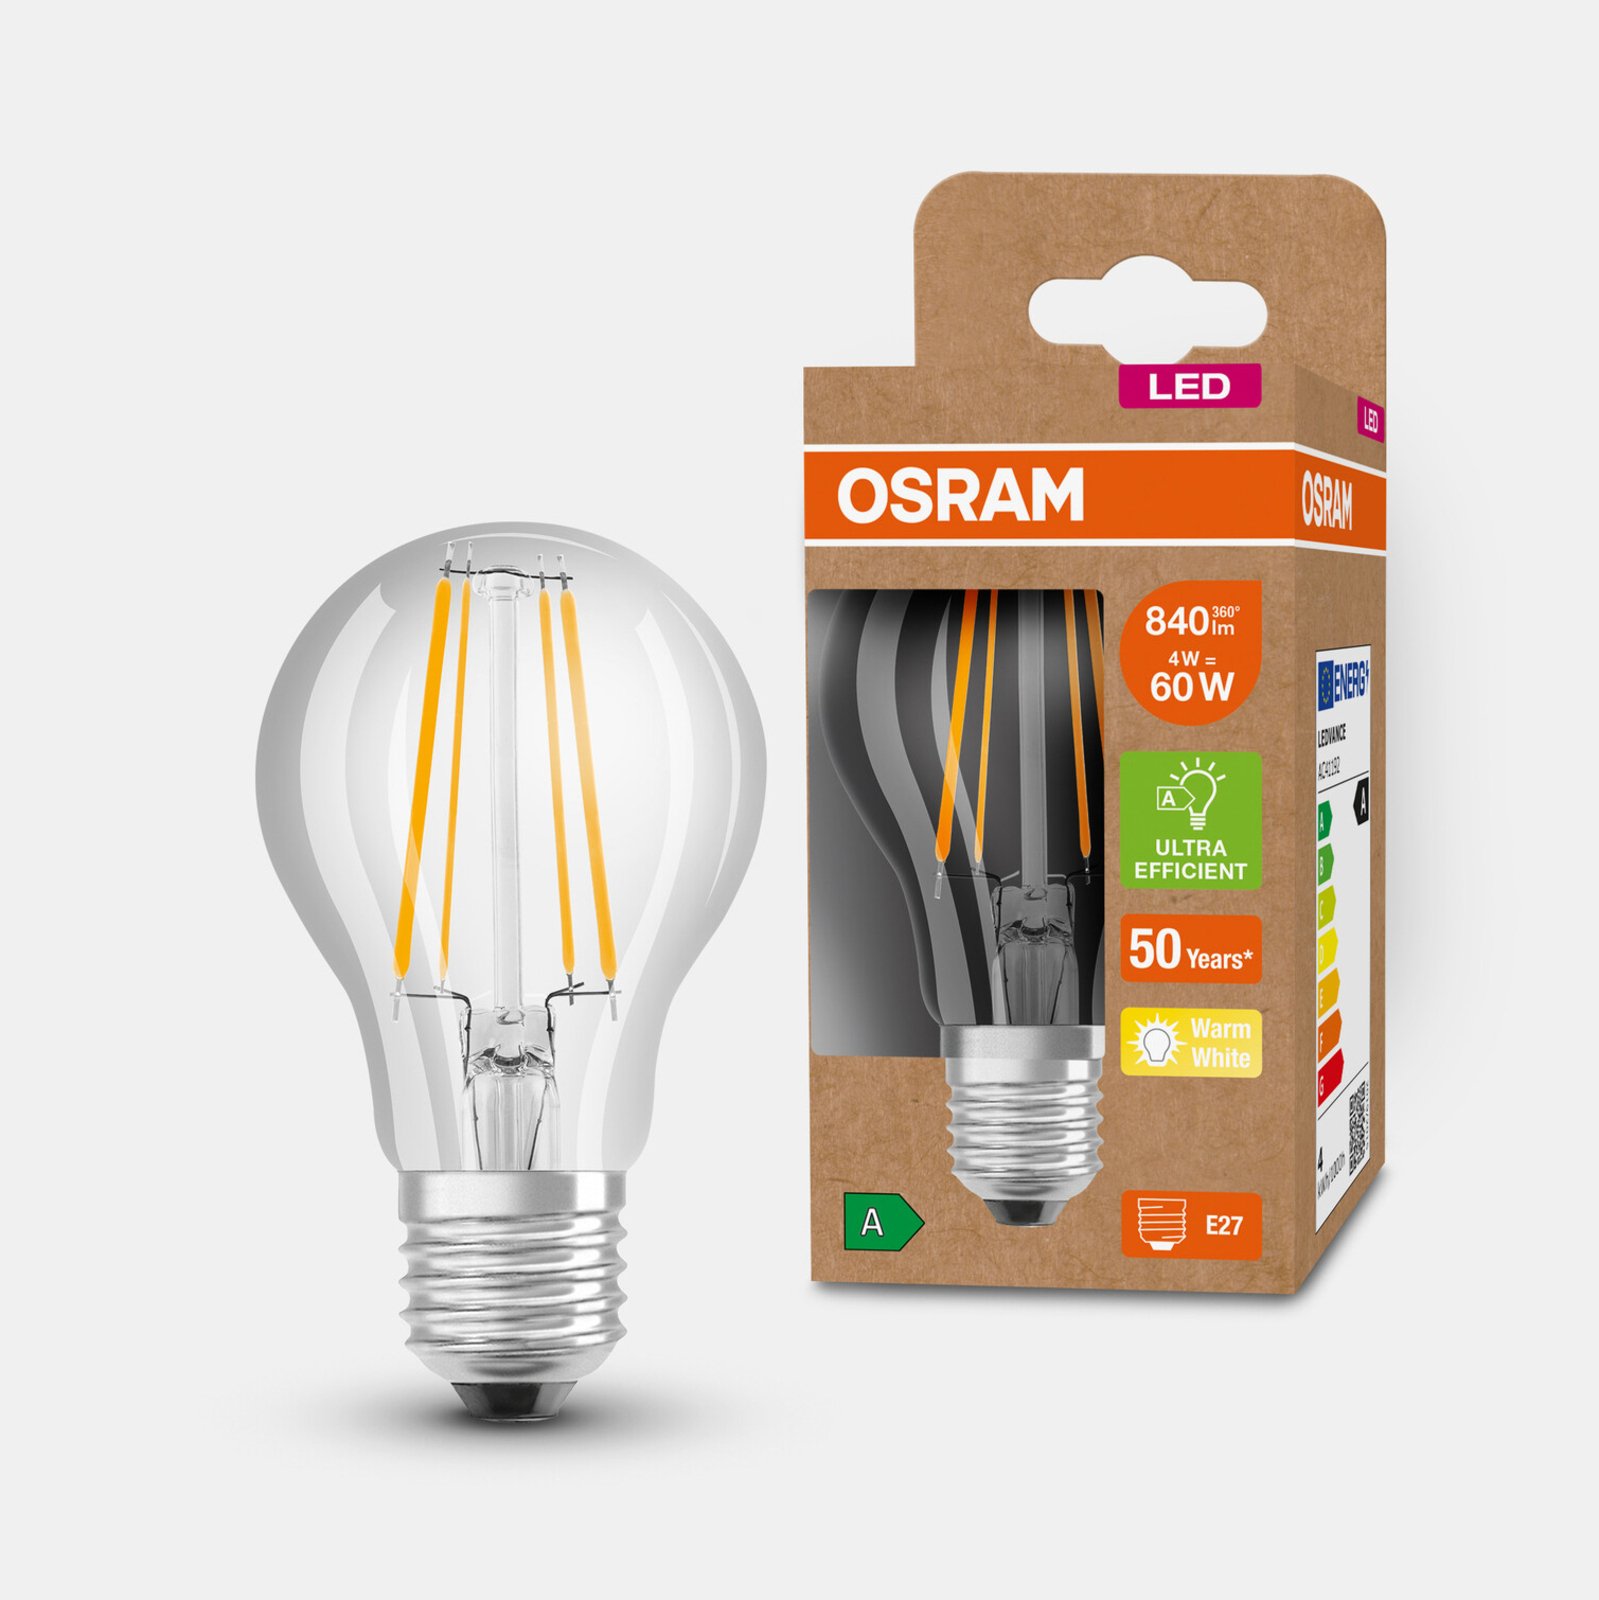 Ampoule LED OSRAM E27 A60 4W 840lm 3.000K claire